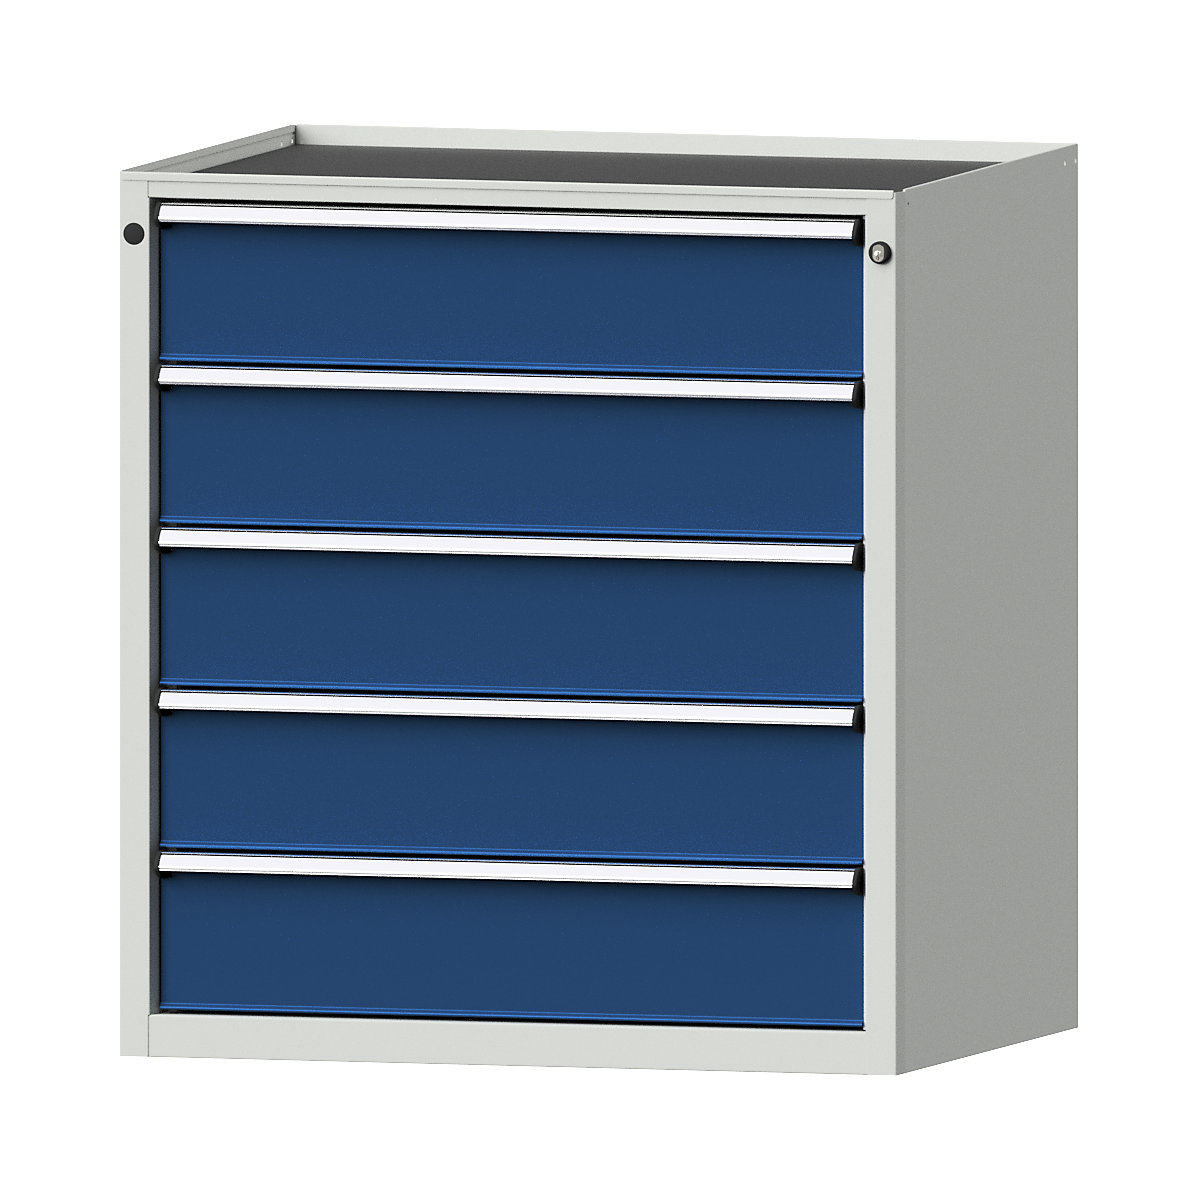 Zásuvková skříň – ANKE, š x h 910 x 675 mm, nosnost zásuvky 200 kg, 5 zásuvek, výška 980 mm, čelo hořcově modré